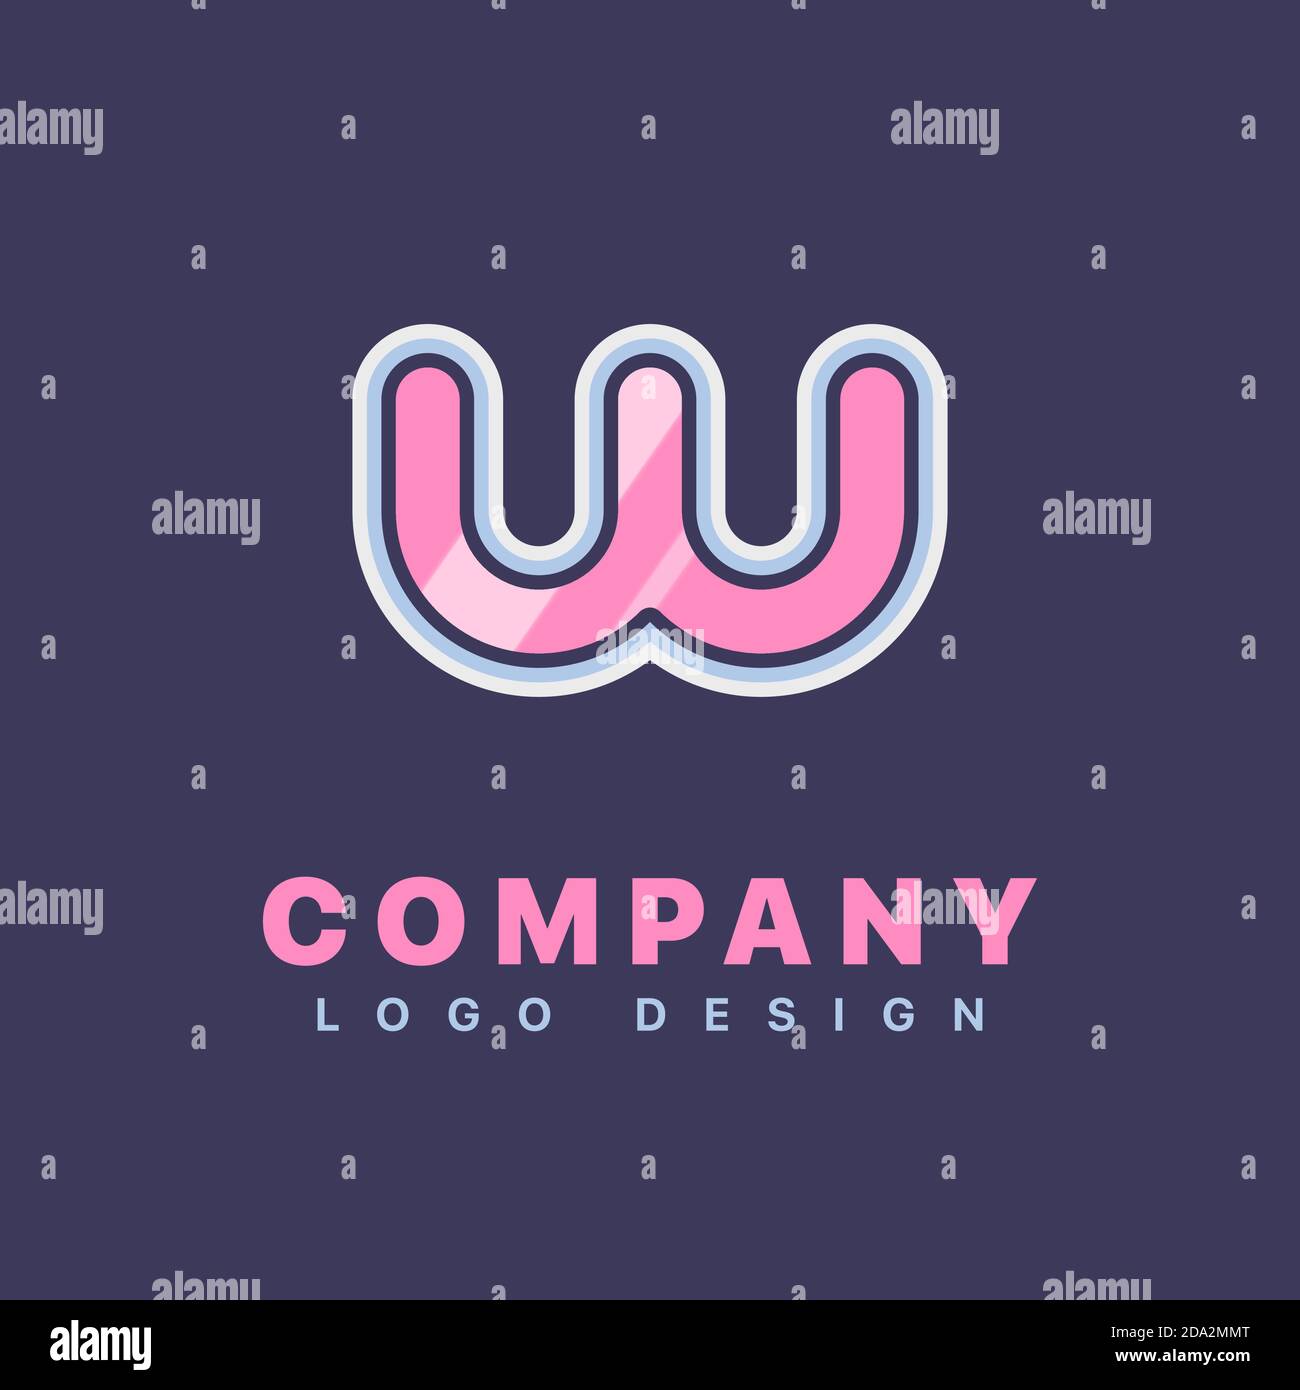 Letter W logo design template. Company logo icon Stock Vector